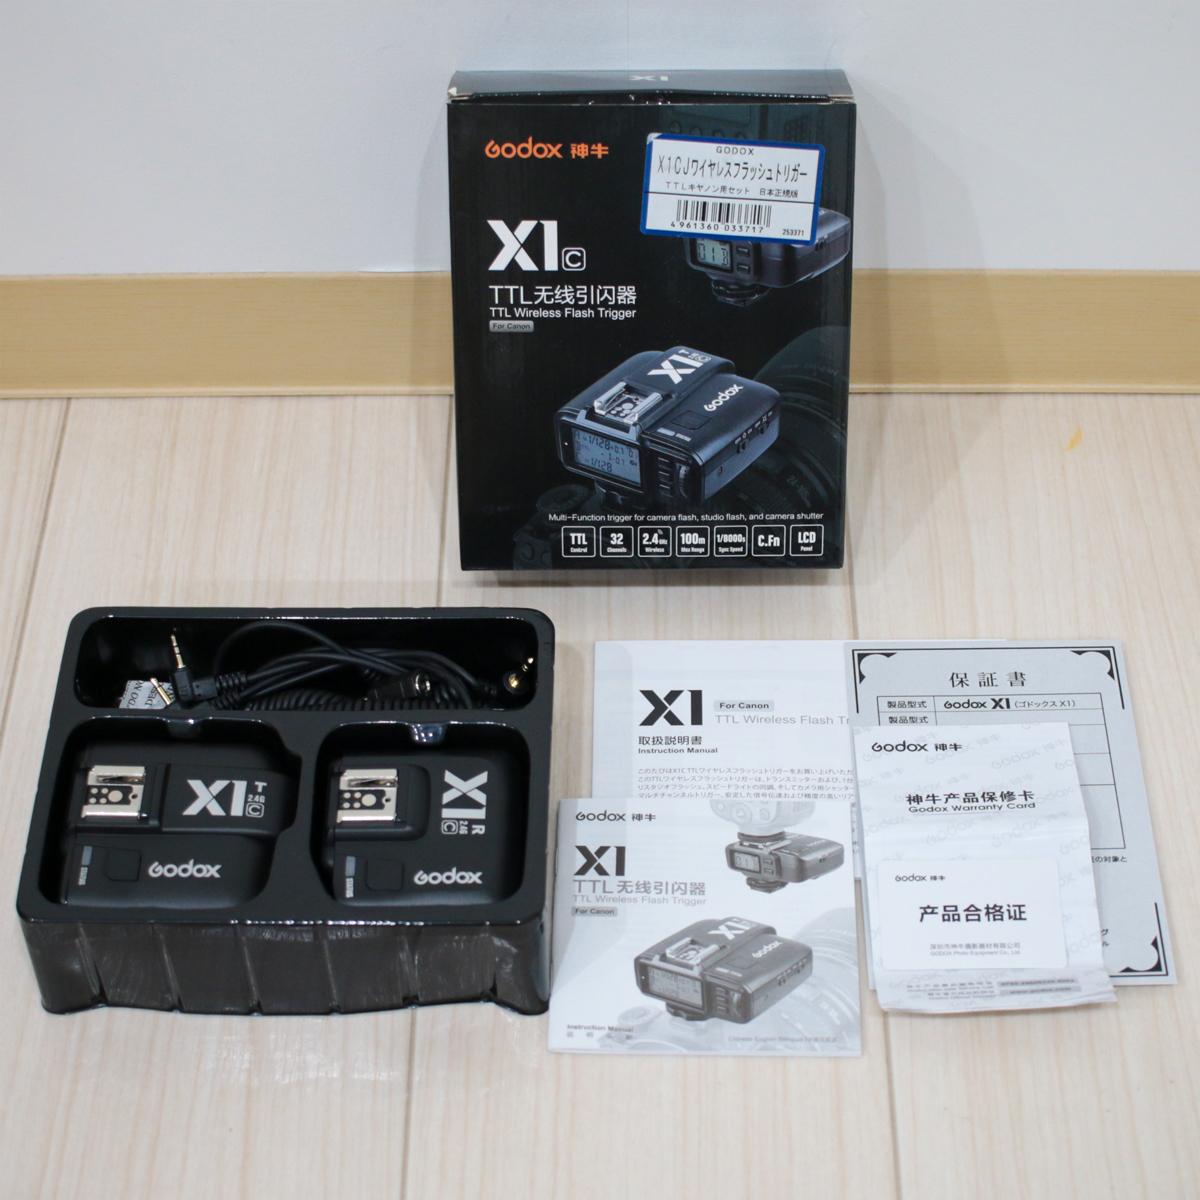 [1 раз только использование ]GODOX/godoks[GX*X1CJ/TTL беспроводной flash выключатель Canon для комплект Япония стандартный версия ] takkyubin (доставка на дом) (EAZY) анонимность рассылка 